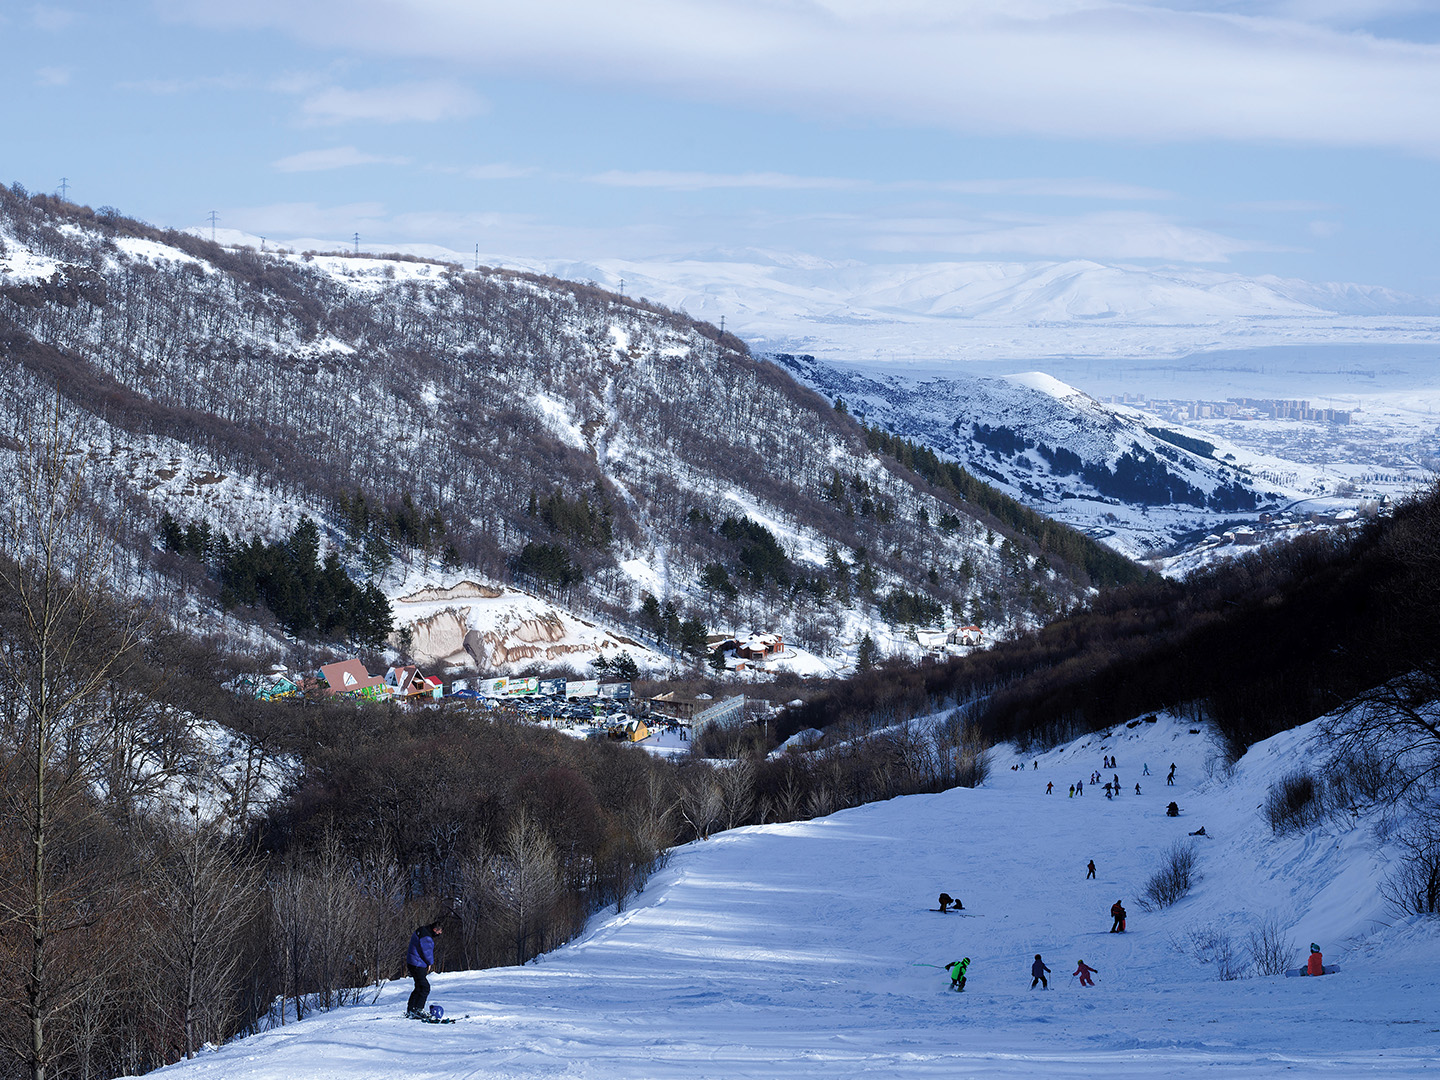 Winter skiers at Tsaghkadzor resort, a popular skiing destination less than an hour’s drive from Yerevan.